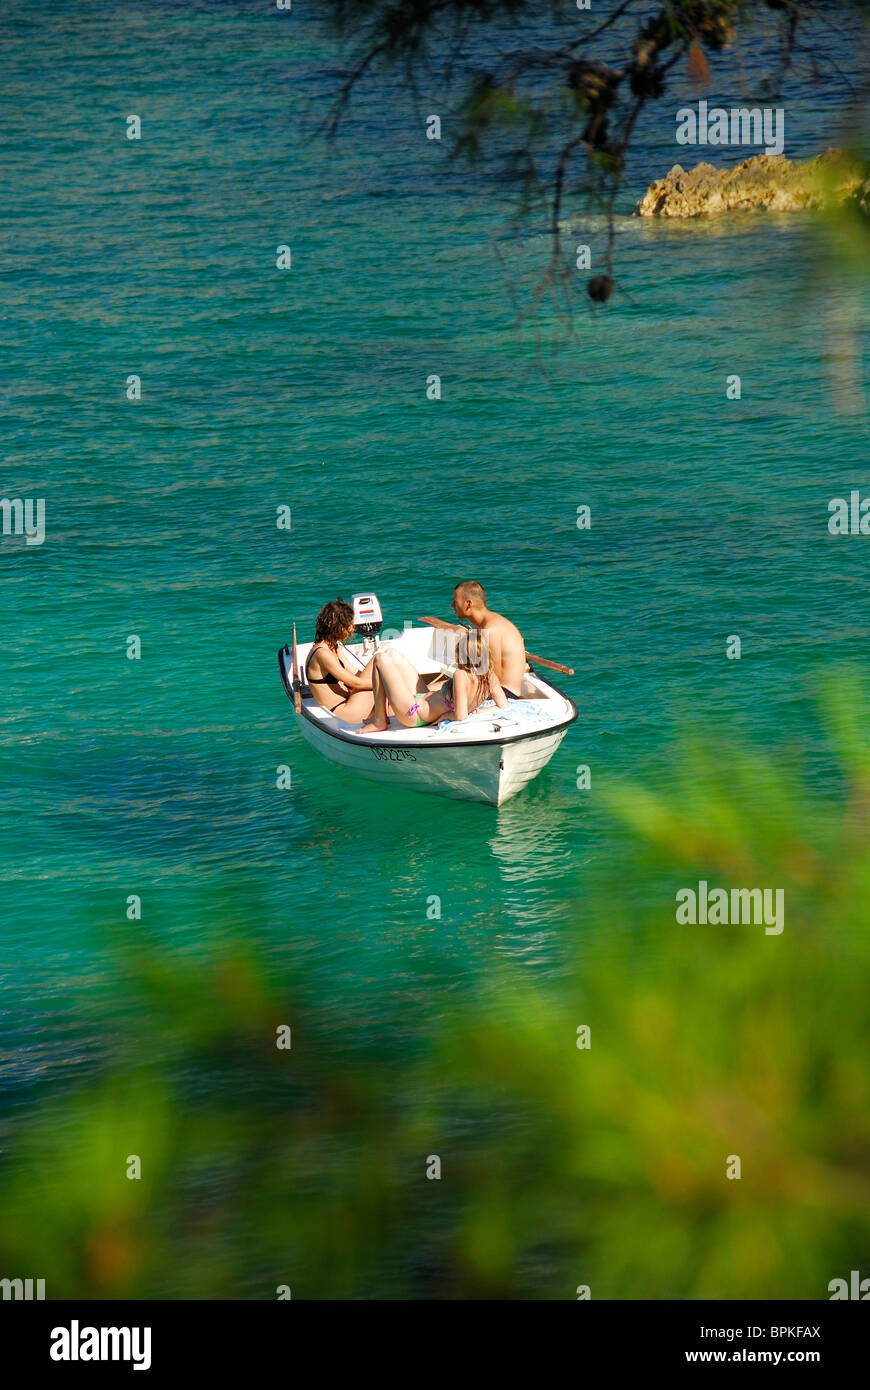 ZATON VELIKI, près de Dubrovnik, Croatie. Trois jeunes sur un petit bateau dans la baie de Zaton. Banque D'Images